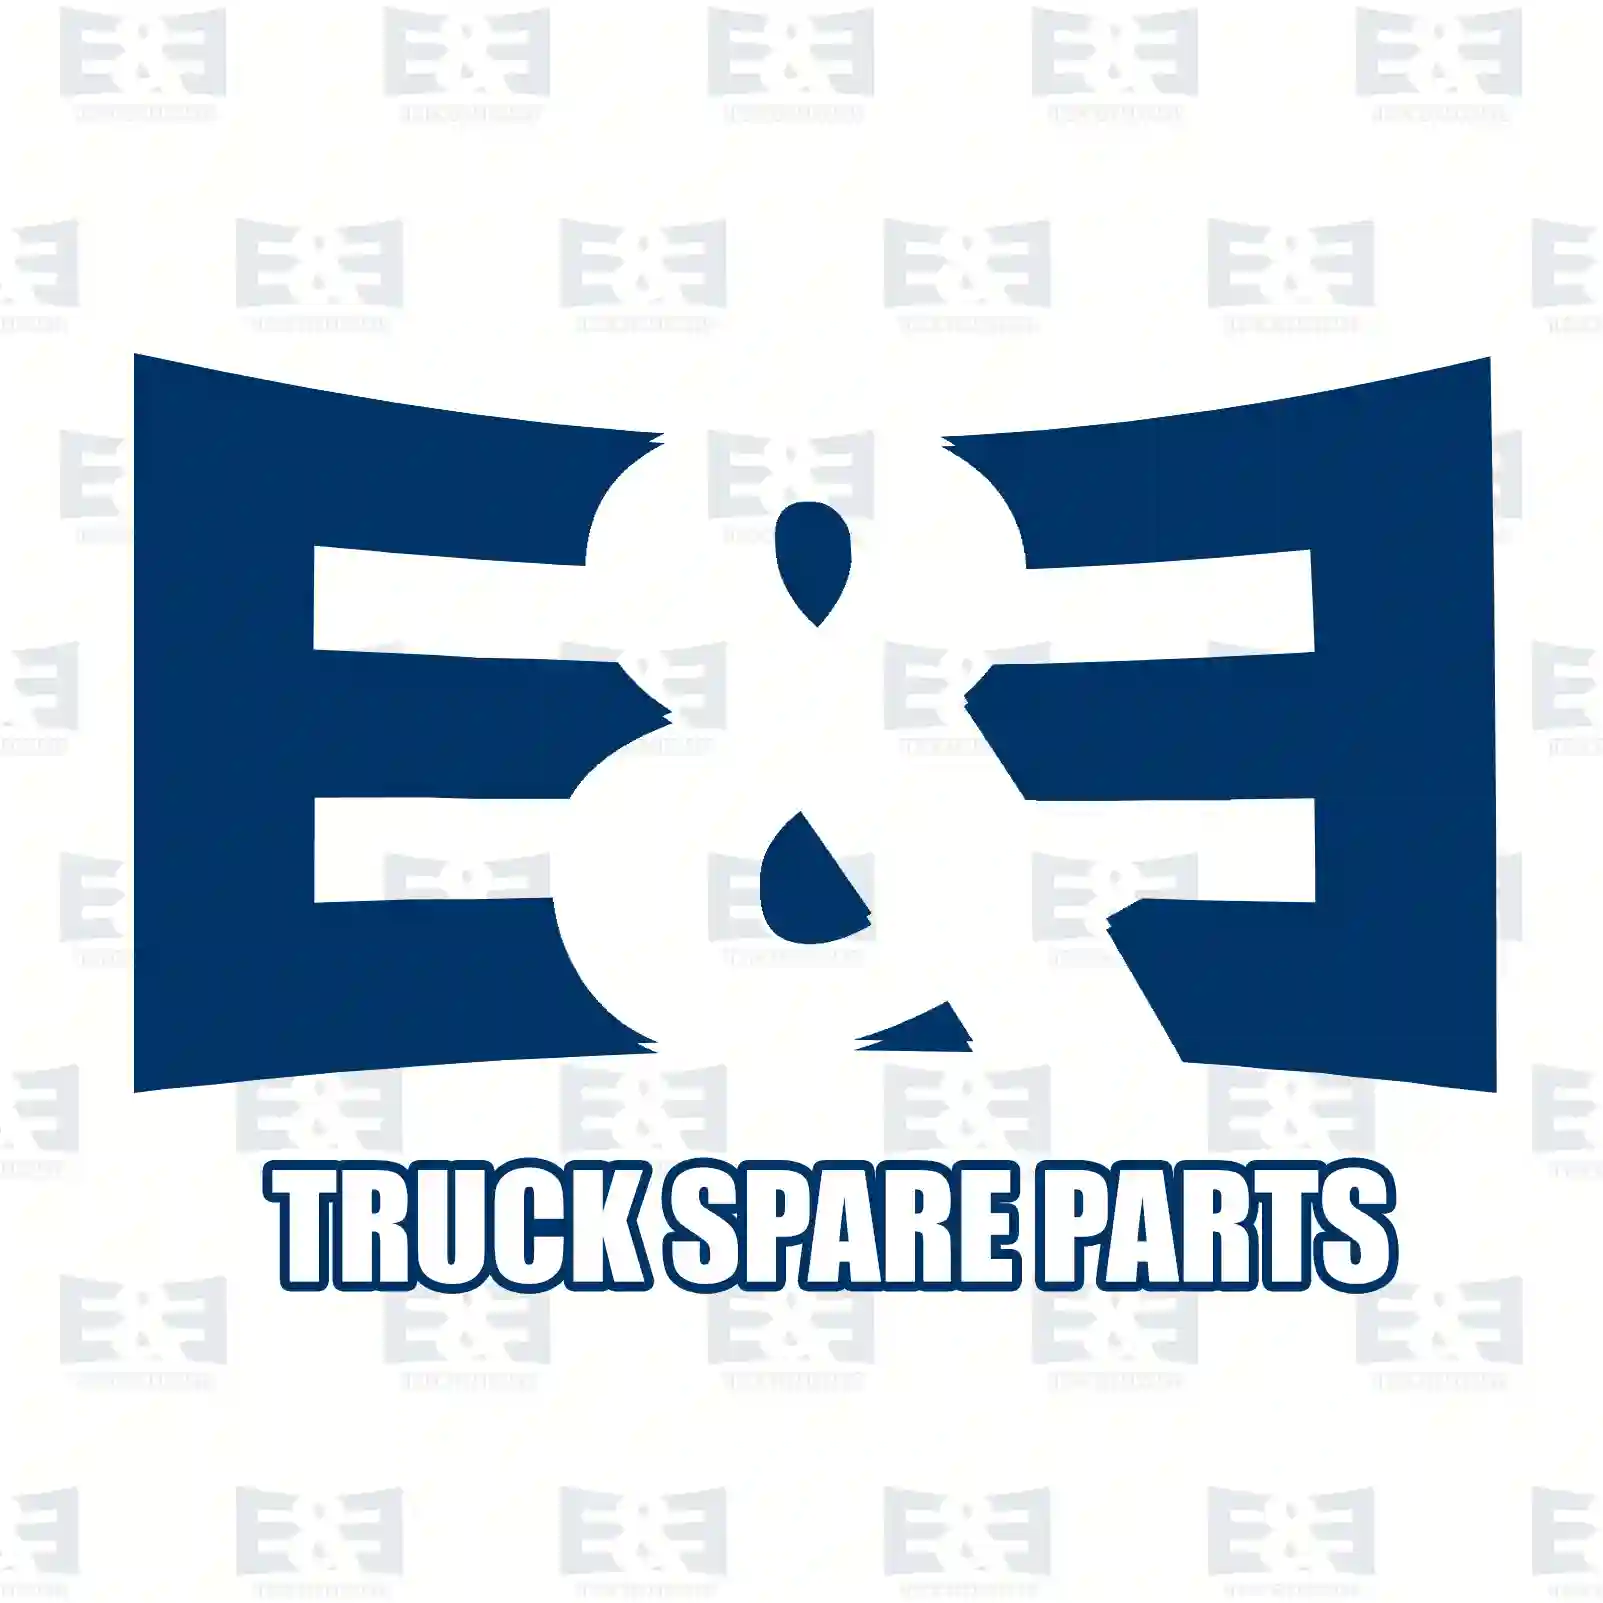 Oil seal, 2E2279158, 0109977246, 0139976846, ||  2E2279158 E&E Truck Spare Parts | Truck Spare Parts, Auotomotive Spare Parts Oil seal, 2E2279158, 0109977246, 0139976846, ||  2E2279158 E&E Truck Spare Parts | Truck Spare Parts, Auotomotive Spare Parts